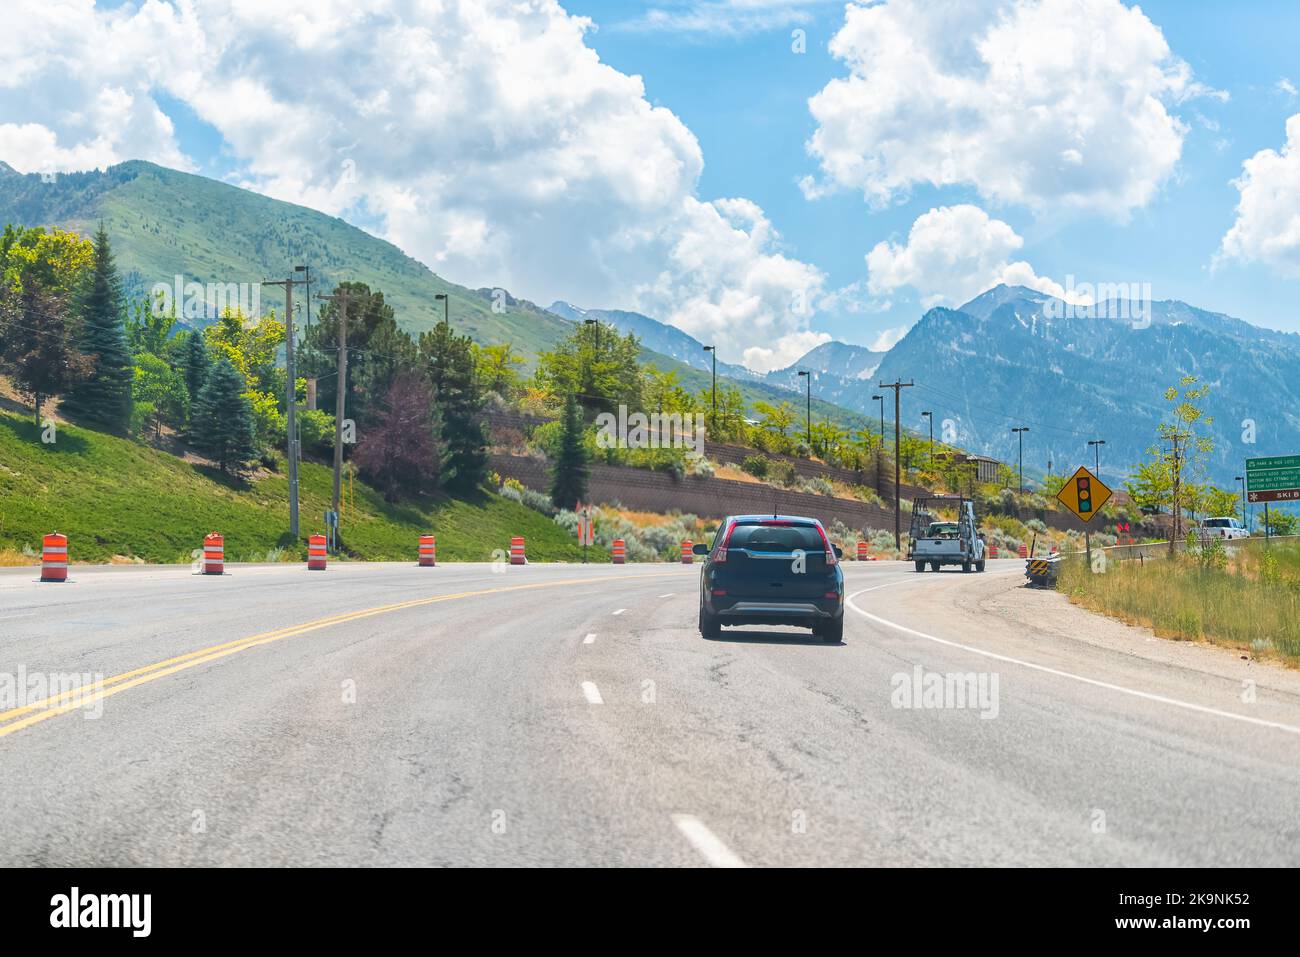 Voitures roulant sur l'autoroute inter-état à Park City, dans la station de ski de l'Utah avec les montagnes Wasatch en été Banque D'Images